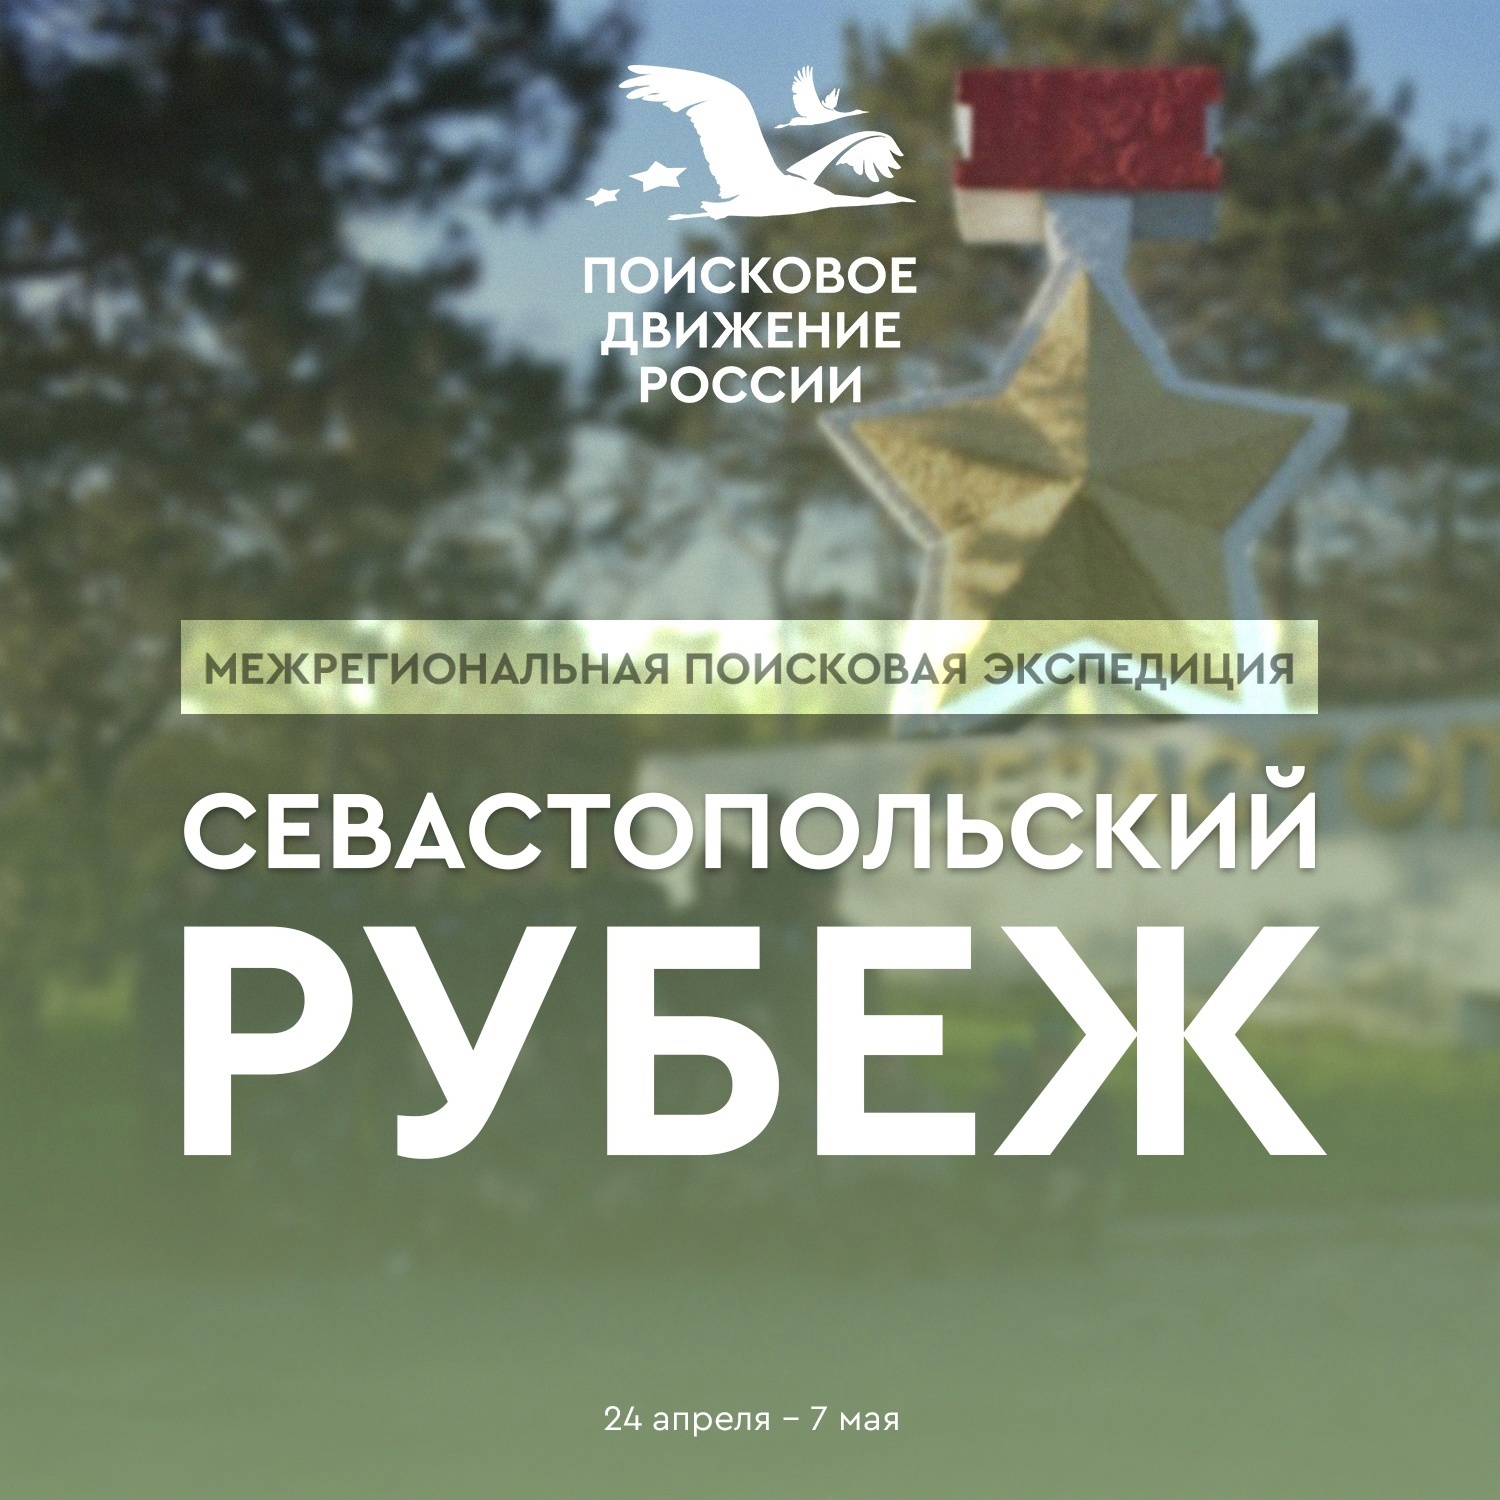 60 поисковиков примут участие в Межрегиональной поисковой экспедиции «Севастопольский рубеж»